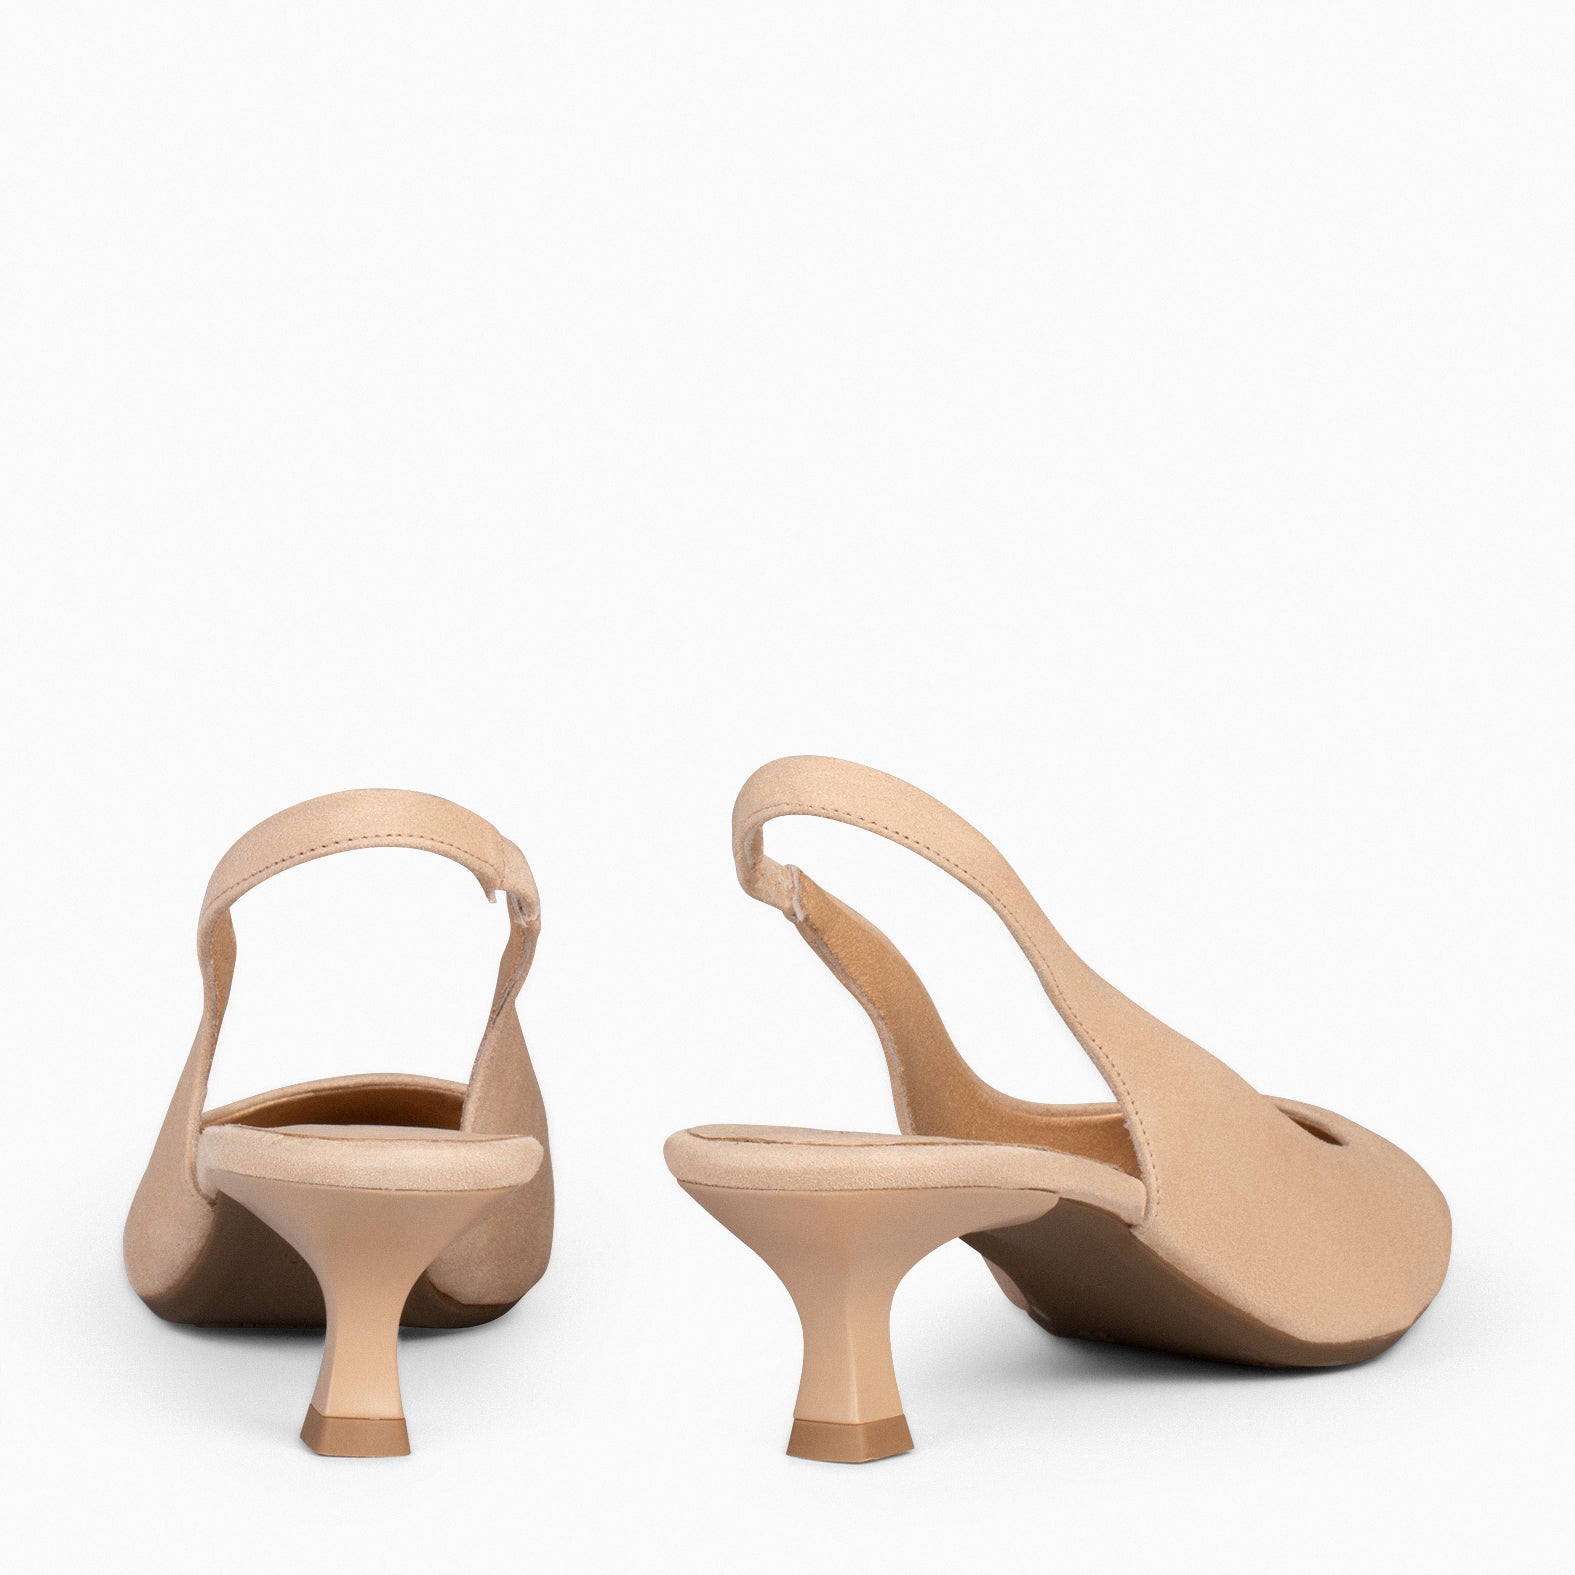 KITTEN – SAND low heel slingback